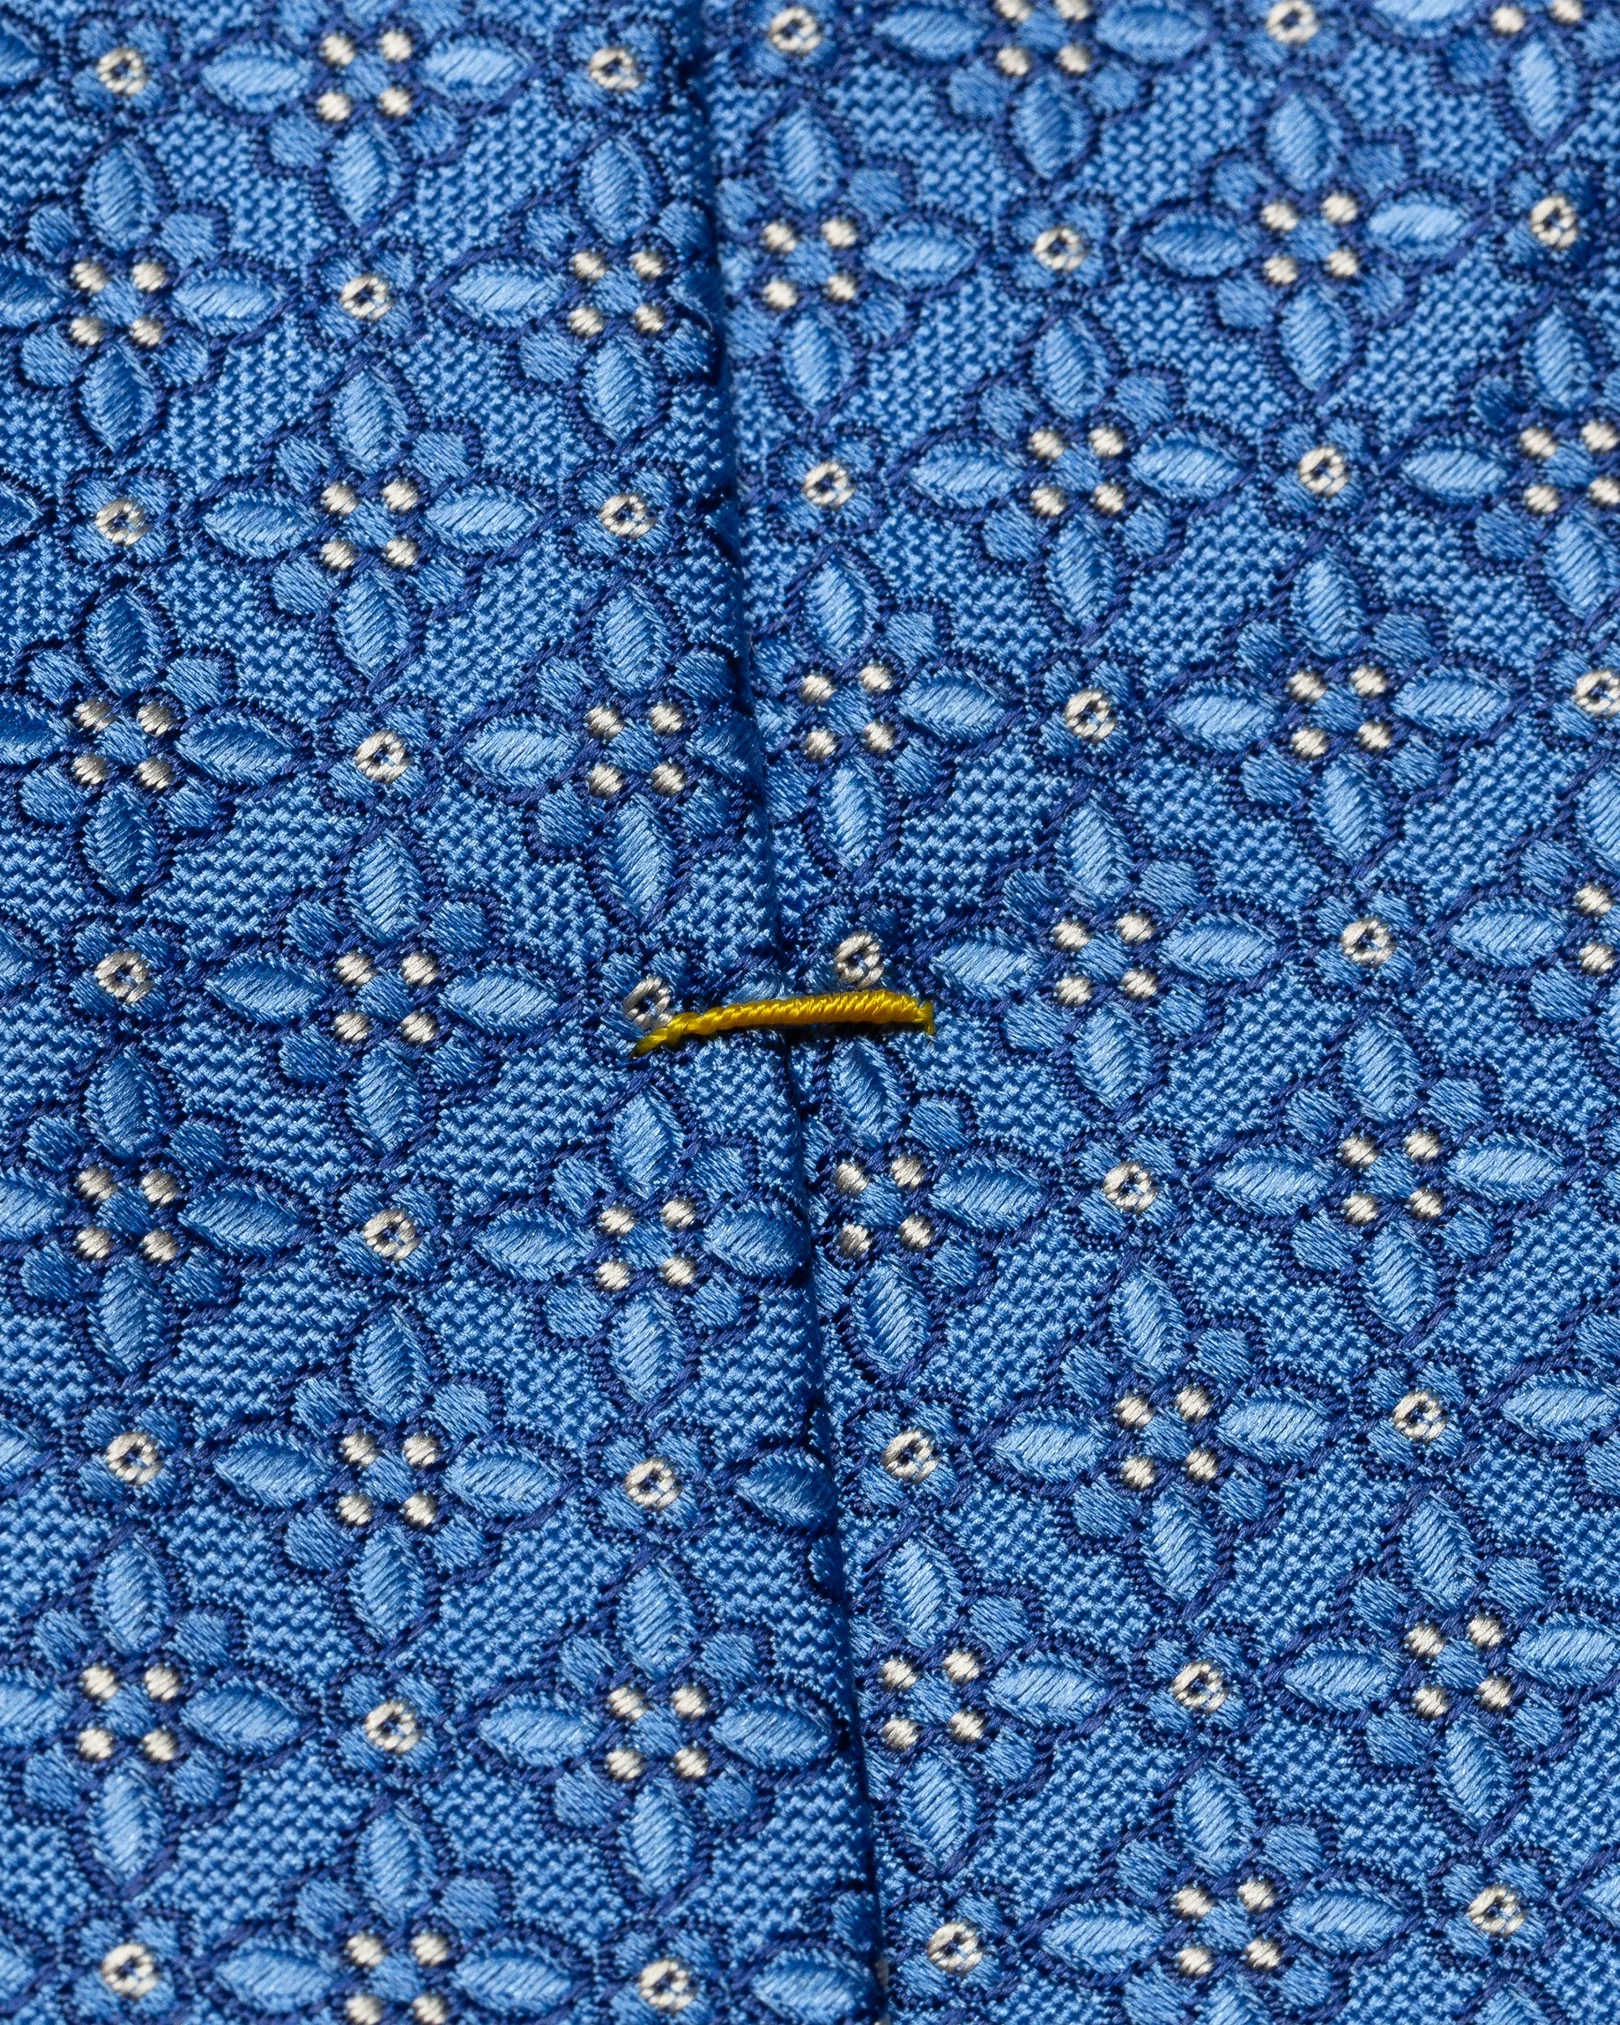 Cravate en soie bleu foncé motifs floraux